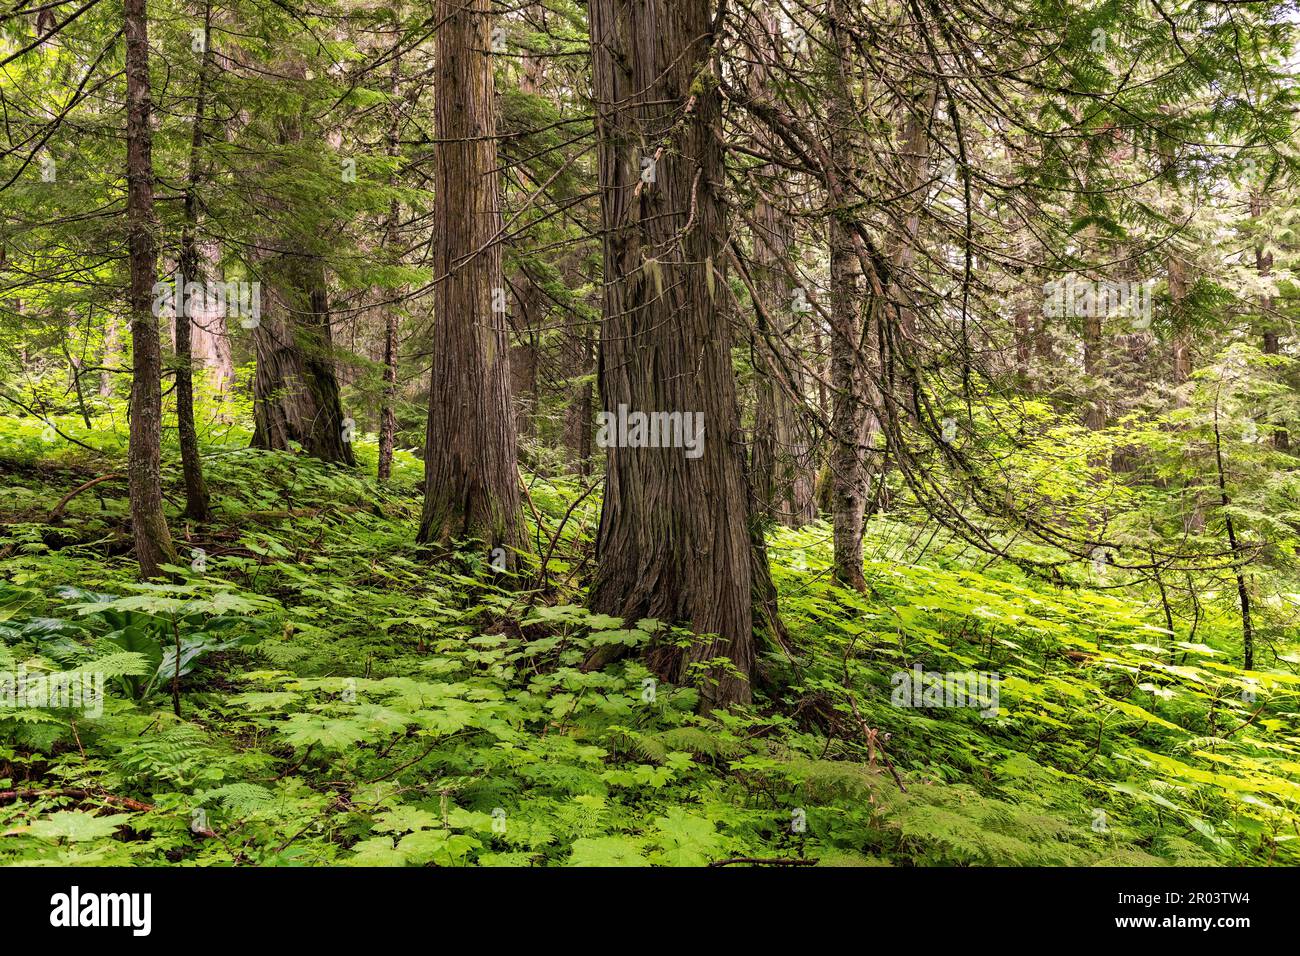 Cèdres et fougères à l'intérieur du parc provincial de la Forêt antique, vallée du fleuve Fraser, près de Prince George, Colombie-Britannique, Canada. Banque D'Images